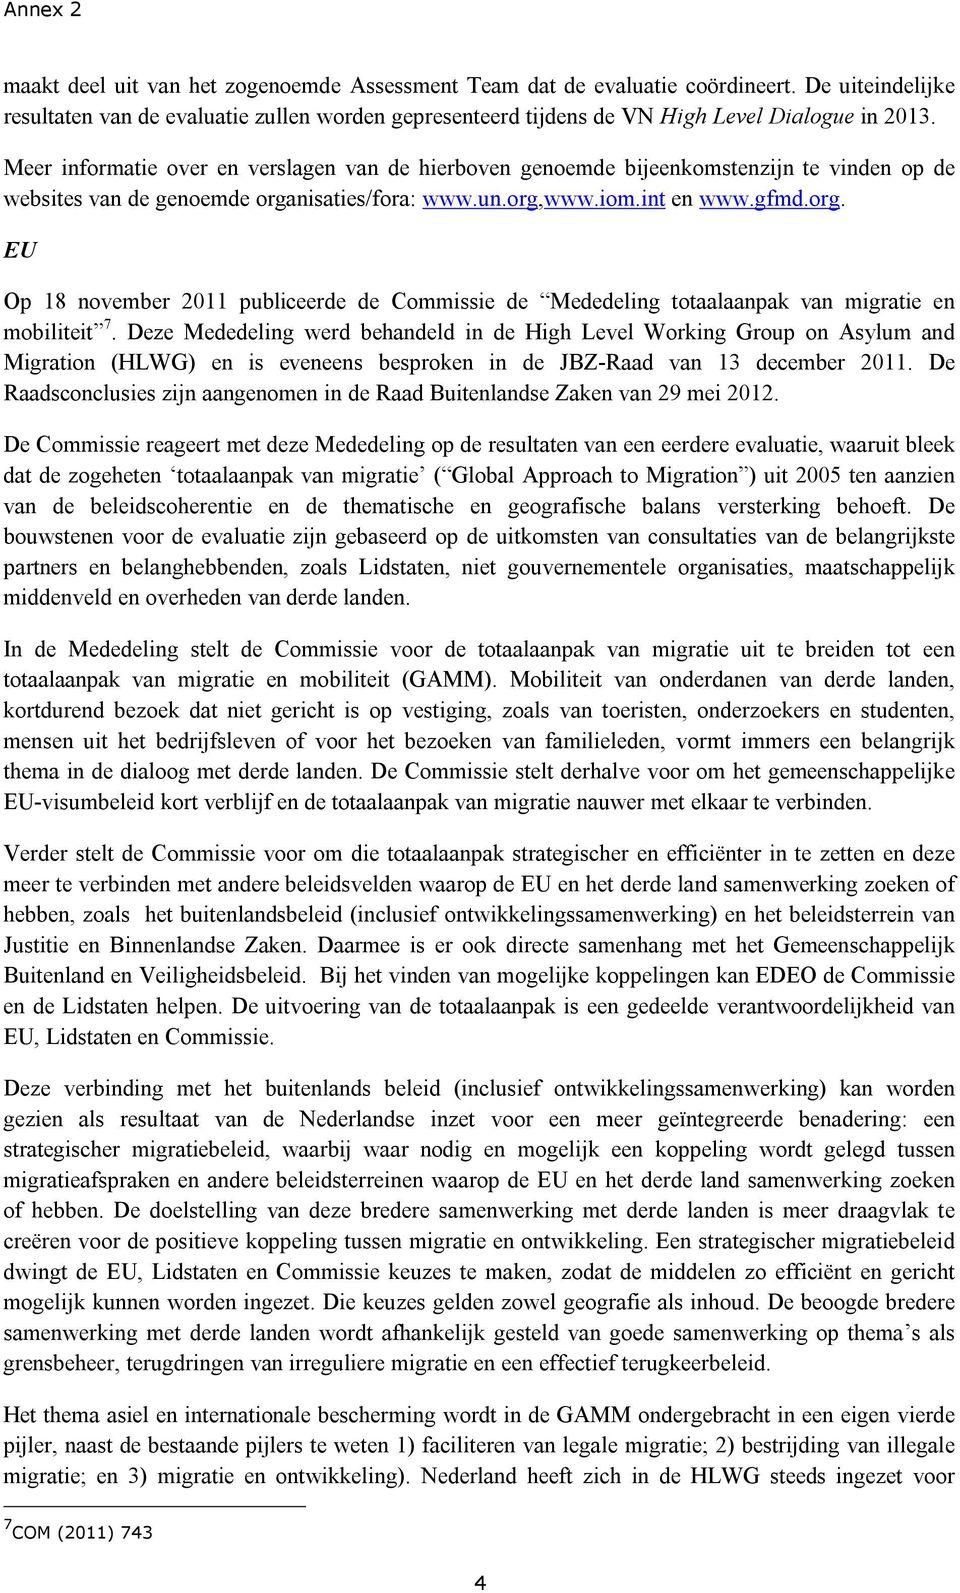 nisaties/fora: www.un.org,www.iom.int en www.gfmd.org. EU Op 18 november 2011 publiceerde de Commissie de Mededeling totaalaanpak van migratie en mobiliteit 7.